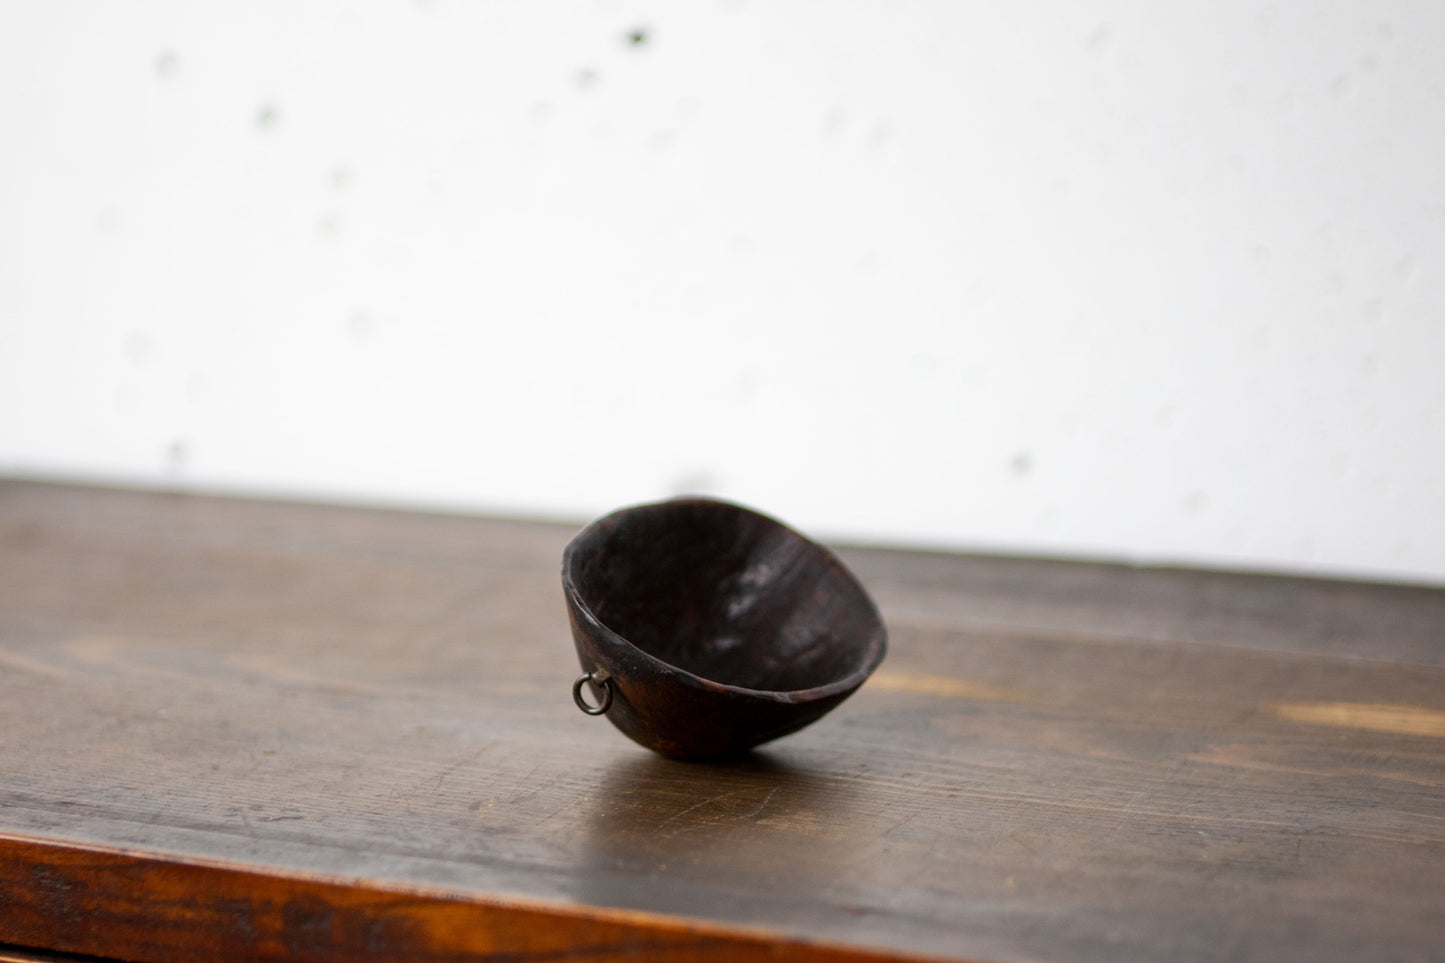 Rare Edo period travelling sake cup (wooden).